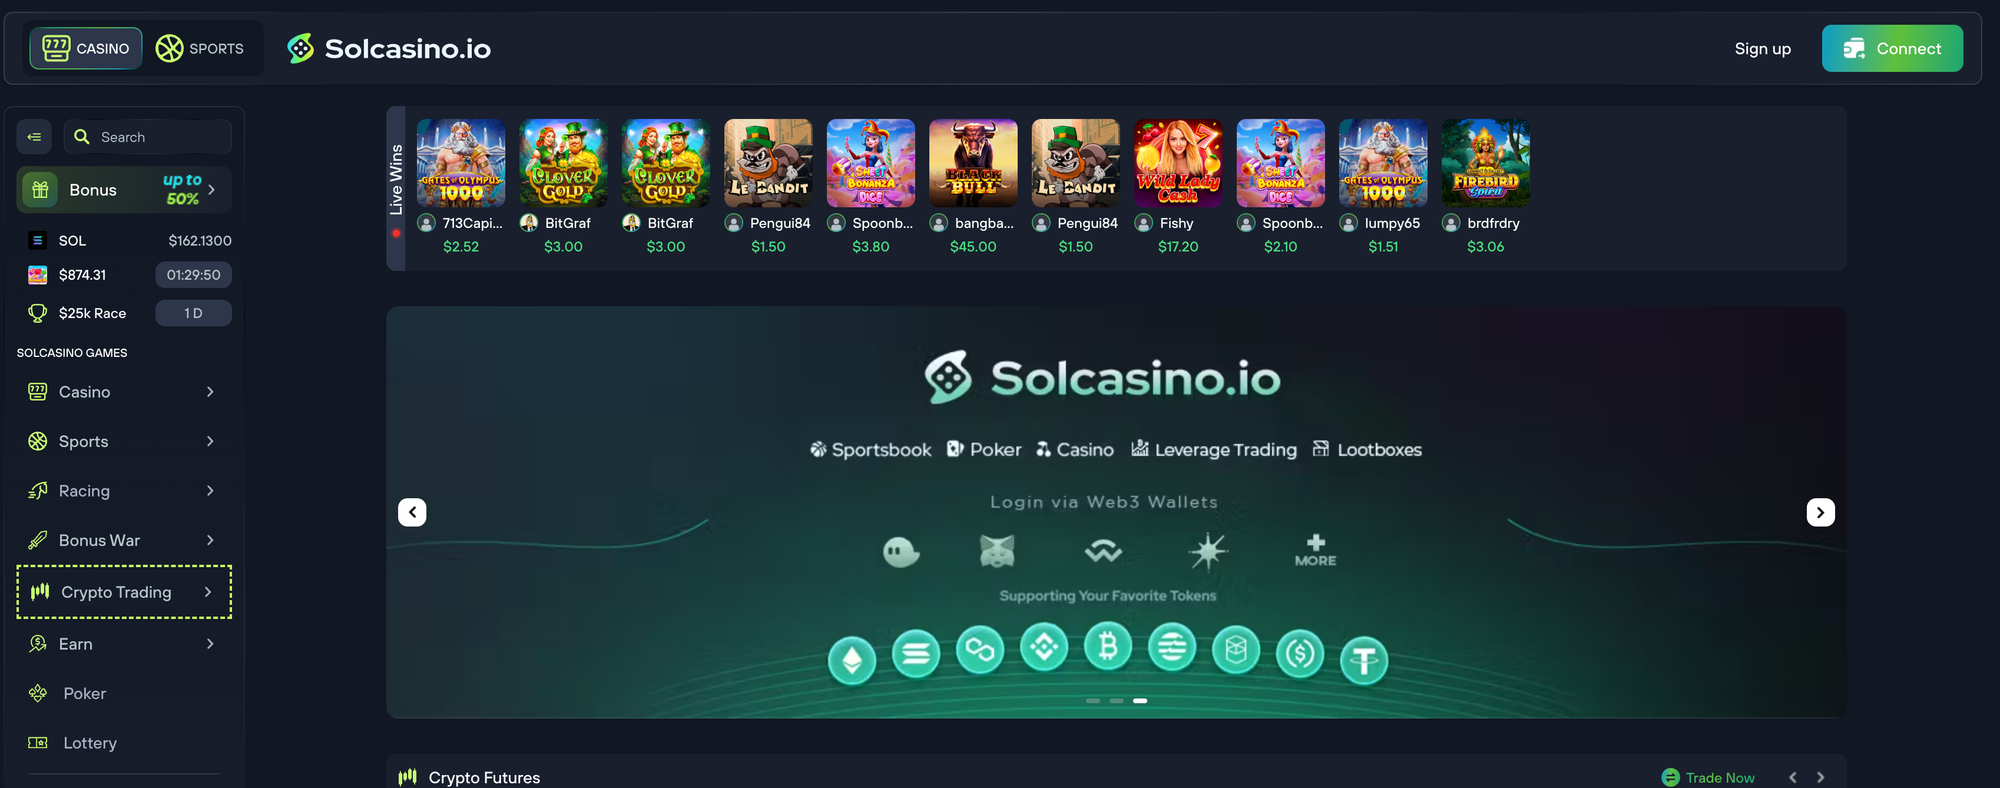 Solcasino.io Casino Review